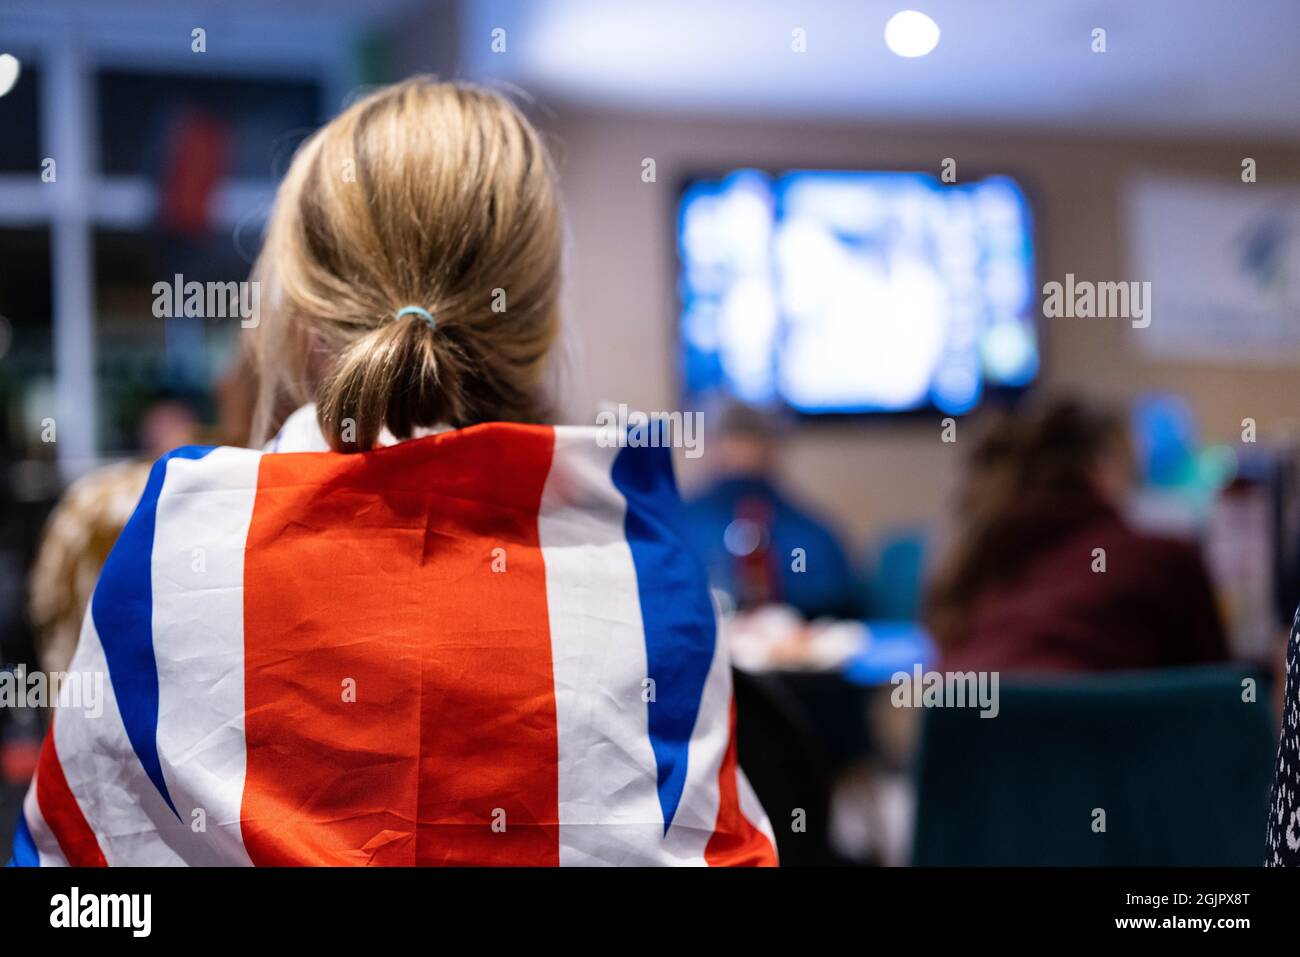 Les fans se tiennent prêts à regarder Emma Raducanu prendre l'adolescent Leylah Fernandez dans la finale de l'US Open au Parklangley Club, Beckenham. Date de la photo: Samedi 11 septembre 2021. Banque D'Images